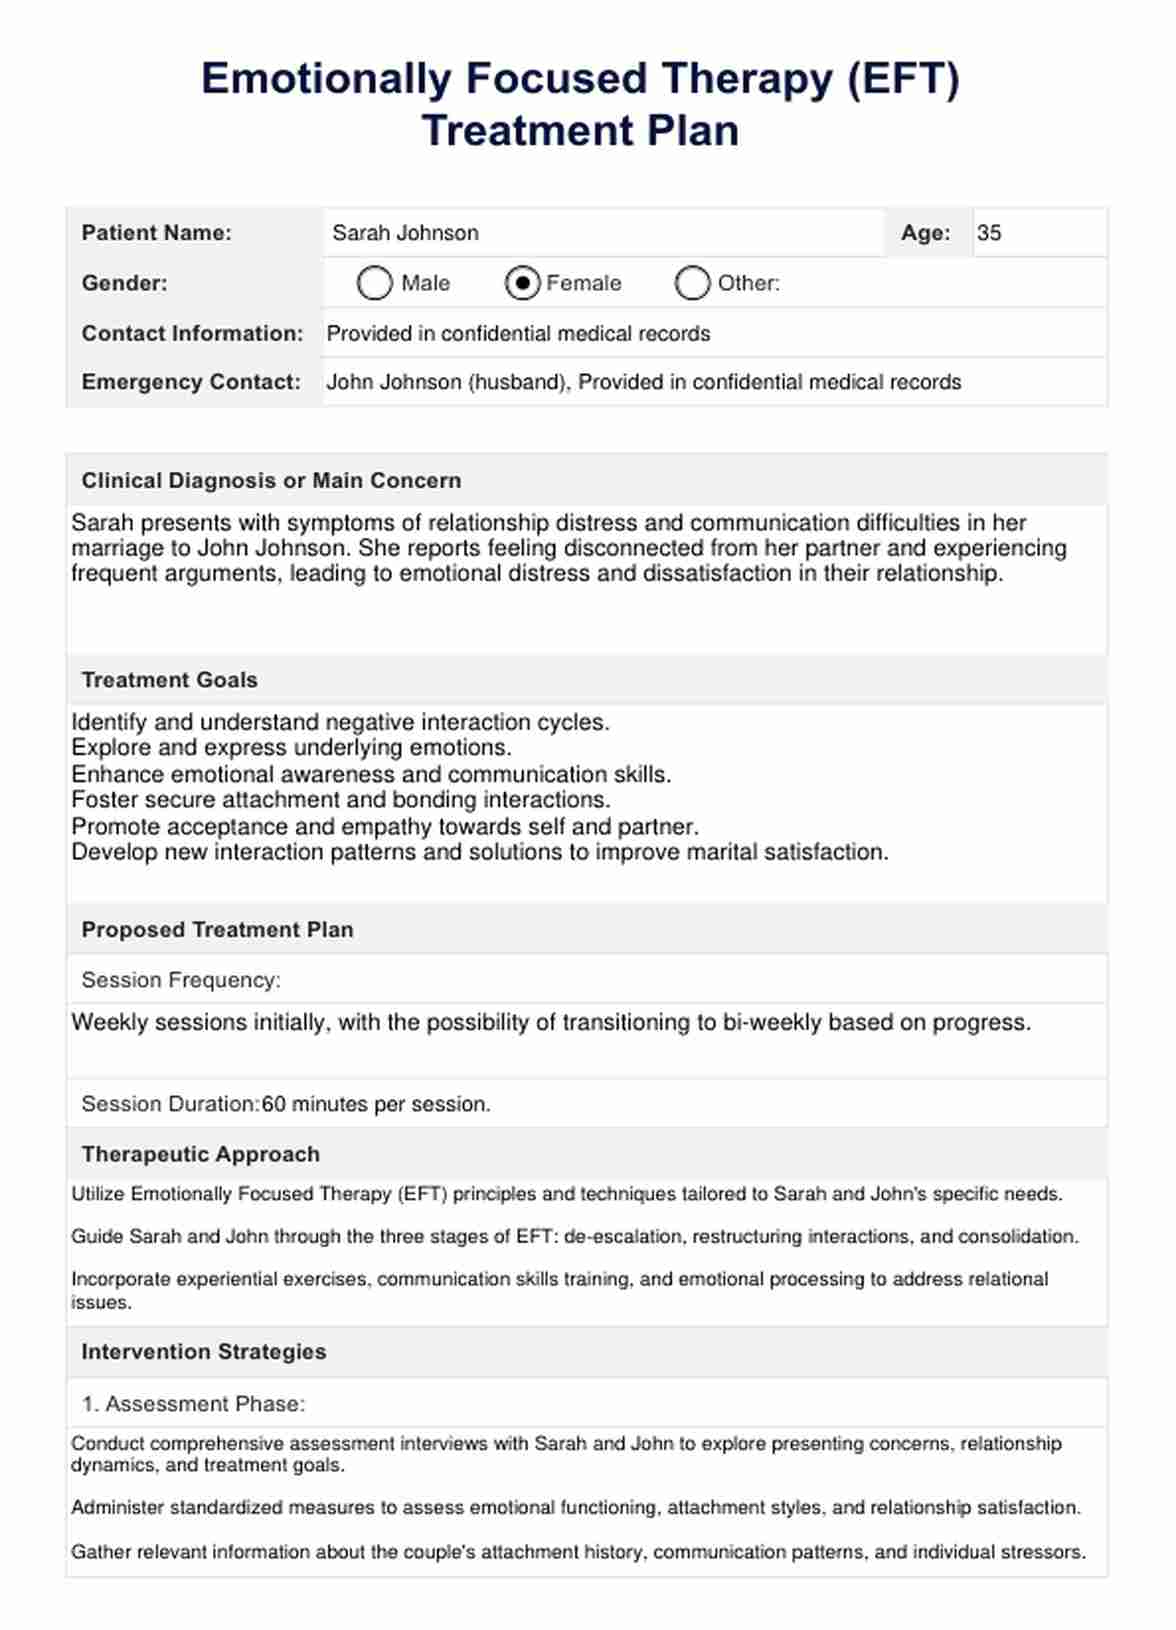 EFT Treatment Plan PDF Example